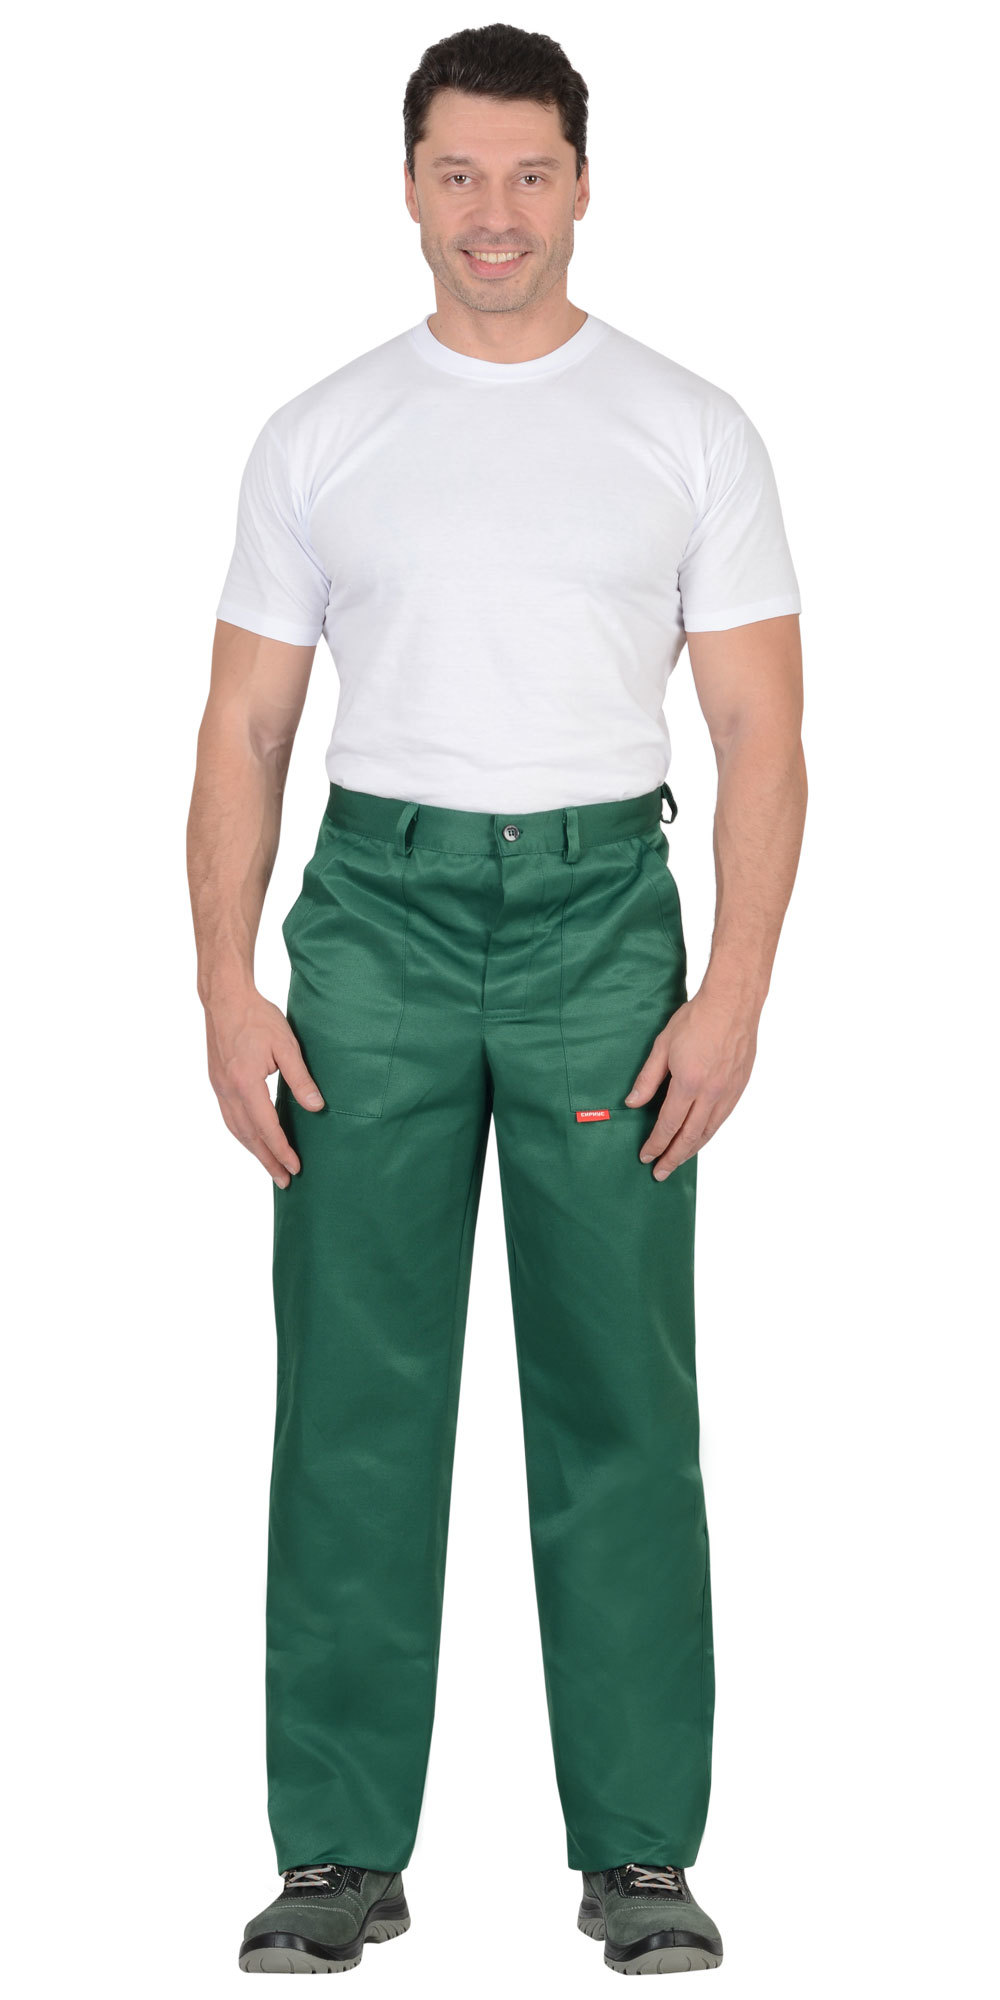 Мужчины в зеленых брюках